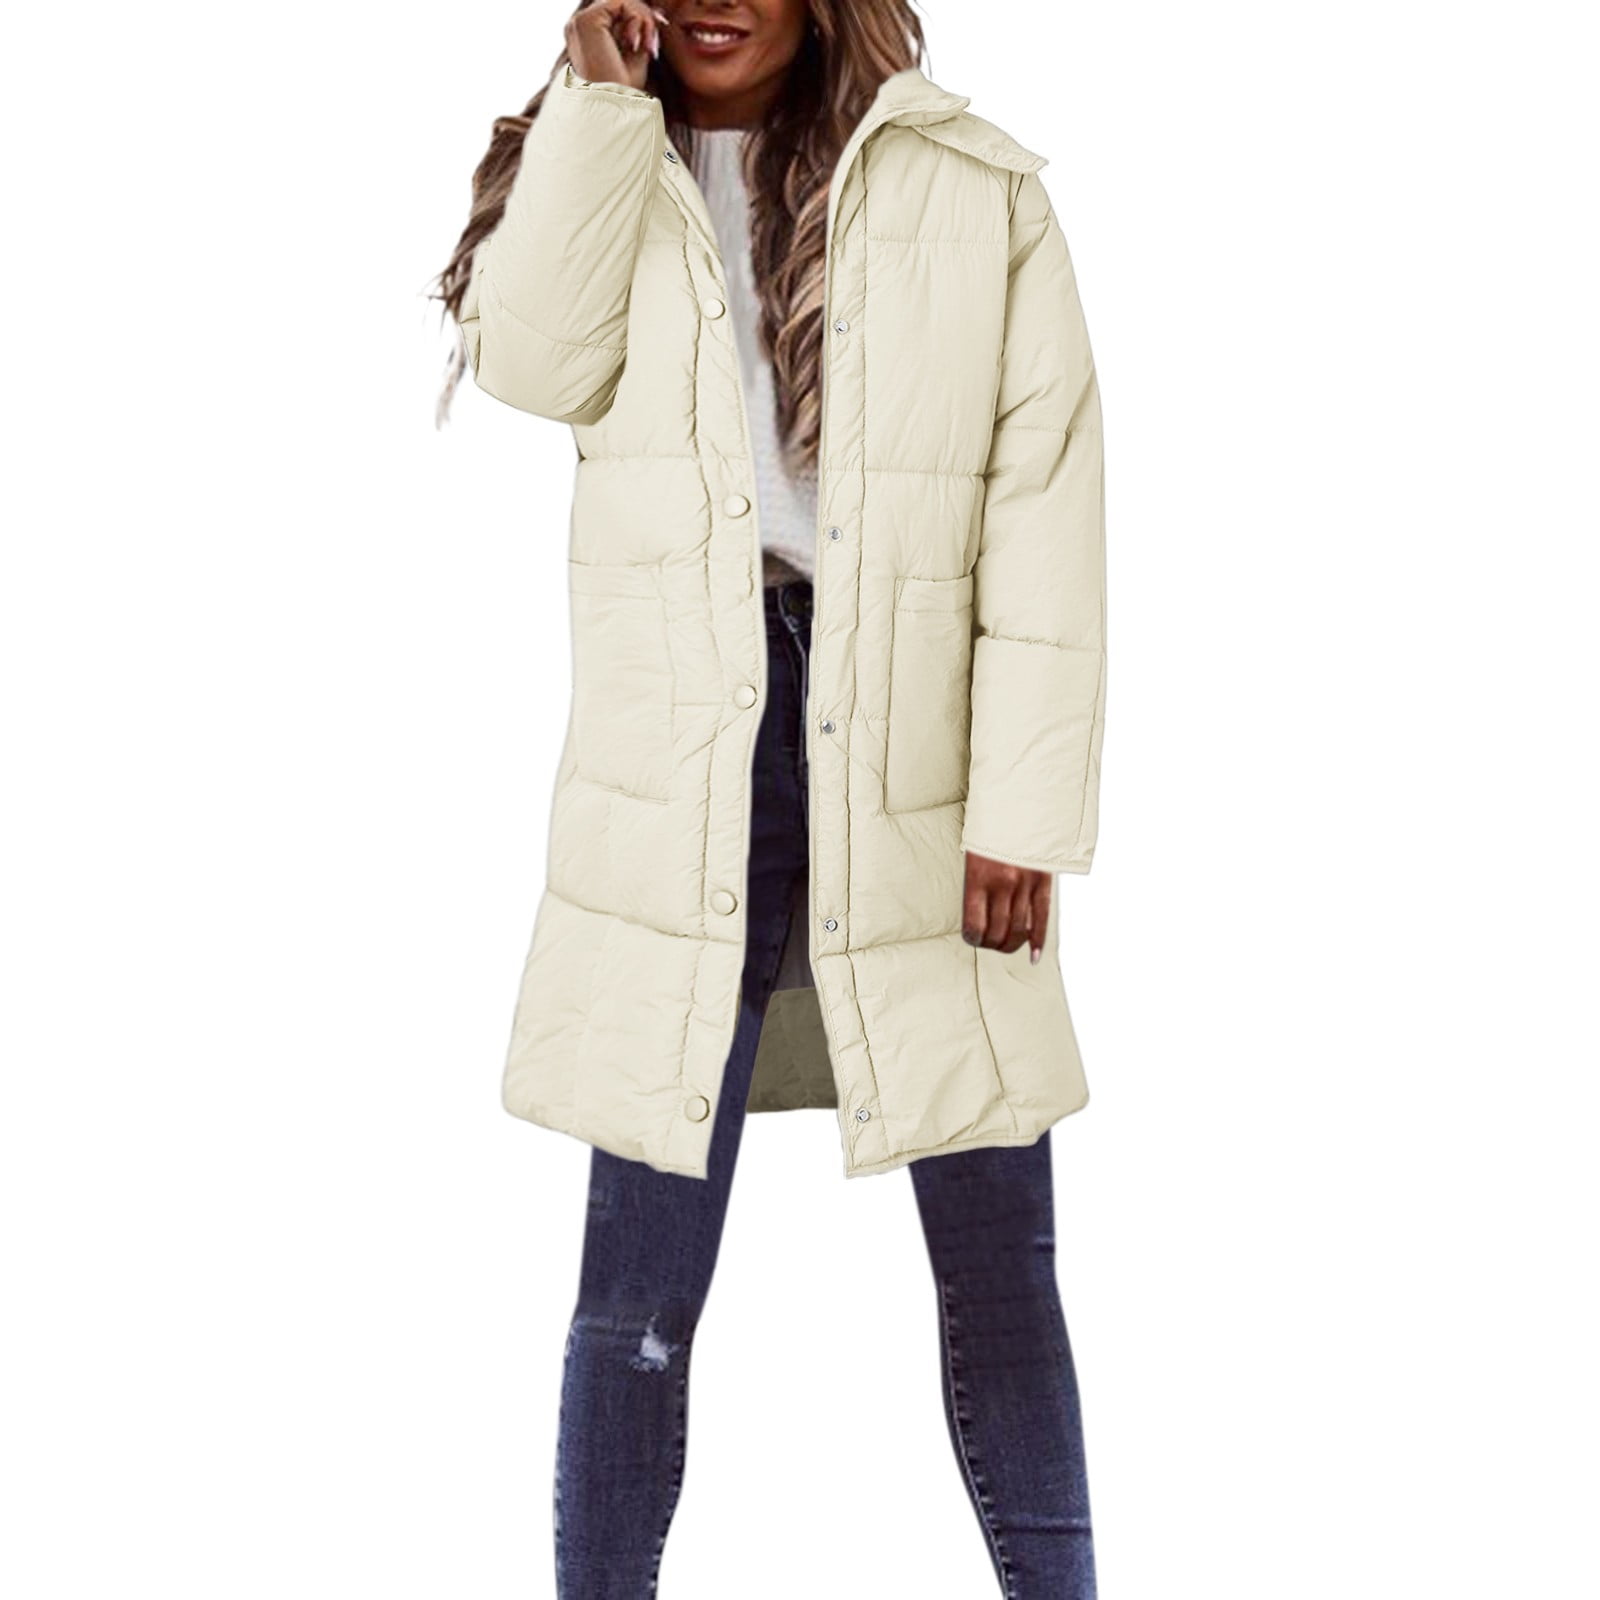 Entyinea Puffer Jacket for Women Winter Long Sleeve Zip Puffer Jacket ...